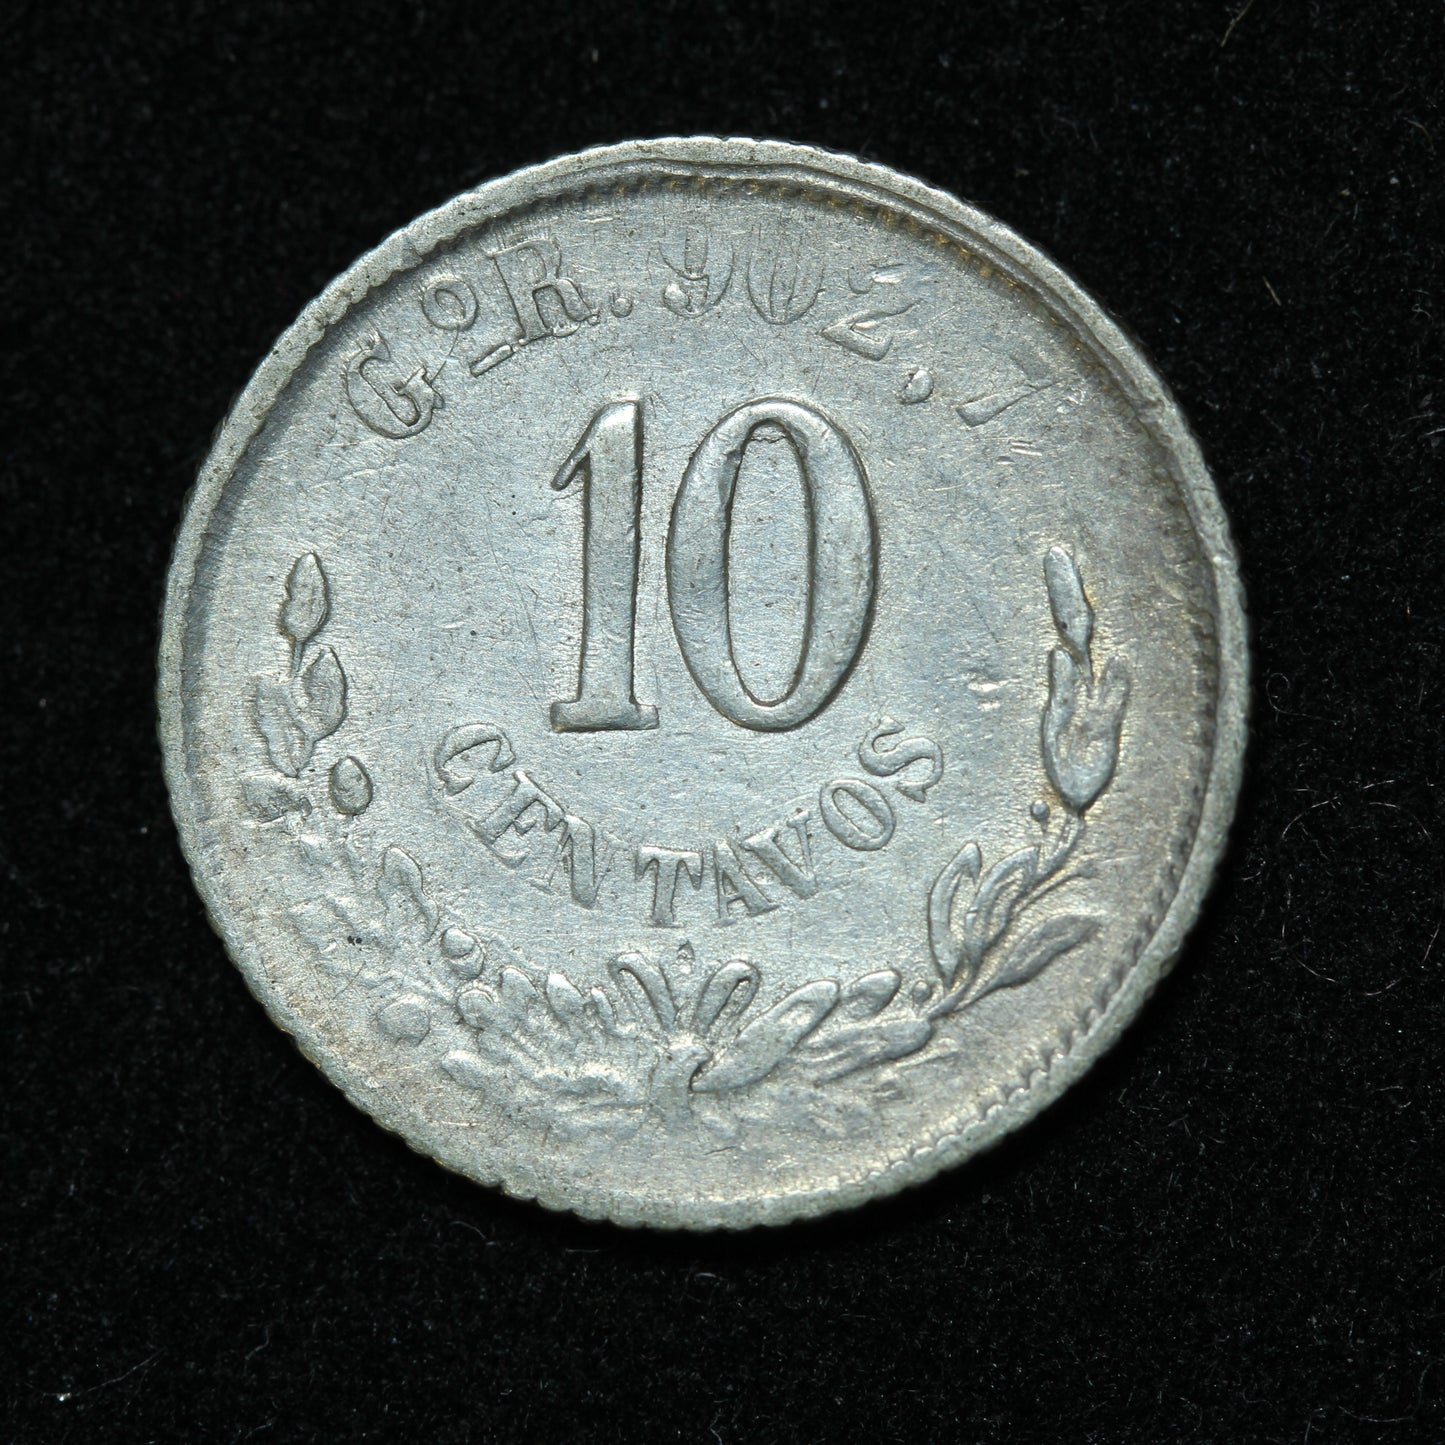 1894 10 Centavos GoR Mexico Second Republic Silver Coin - KM# 403.5